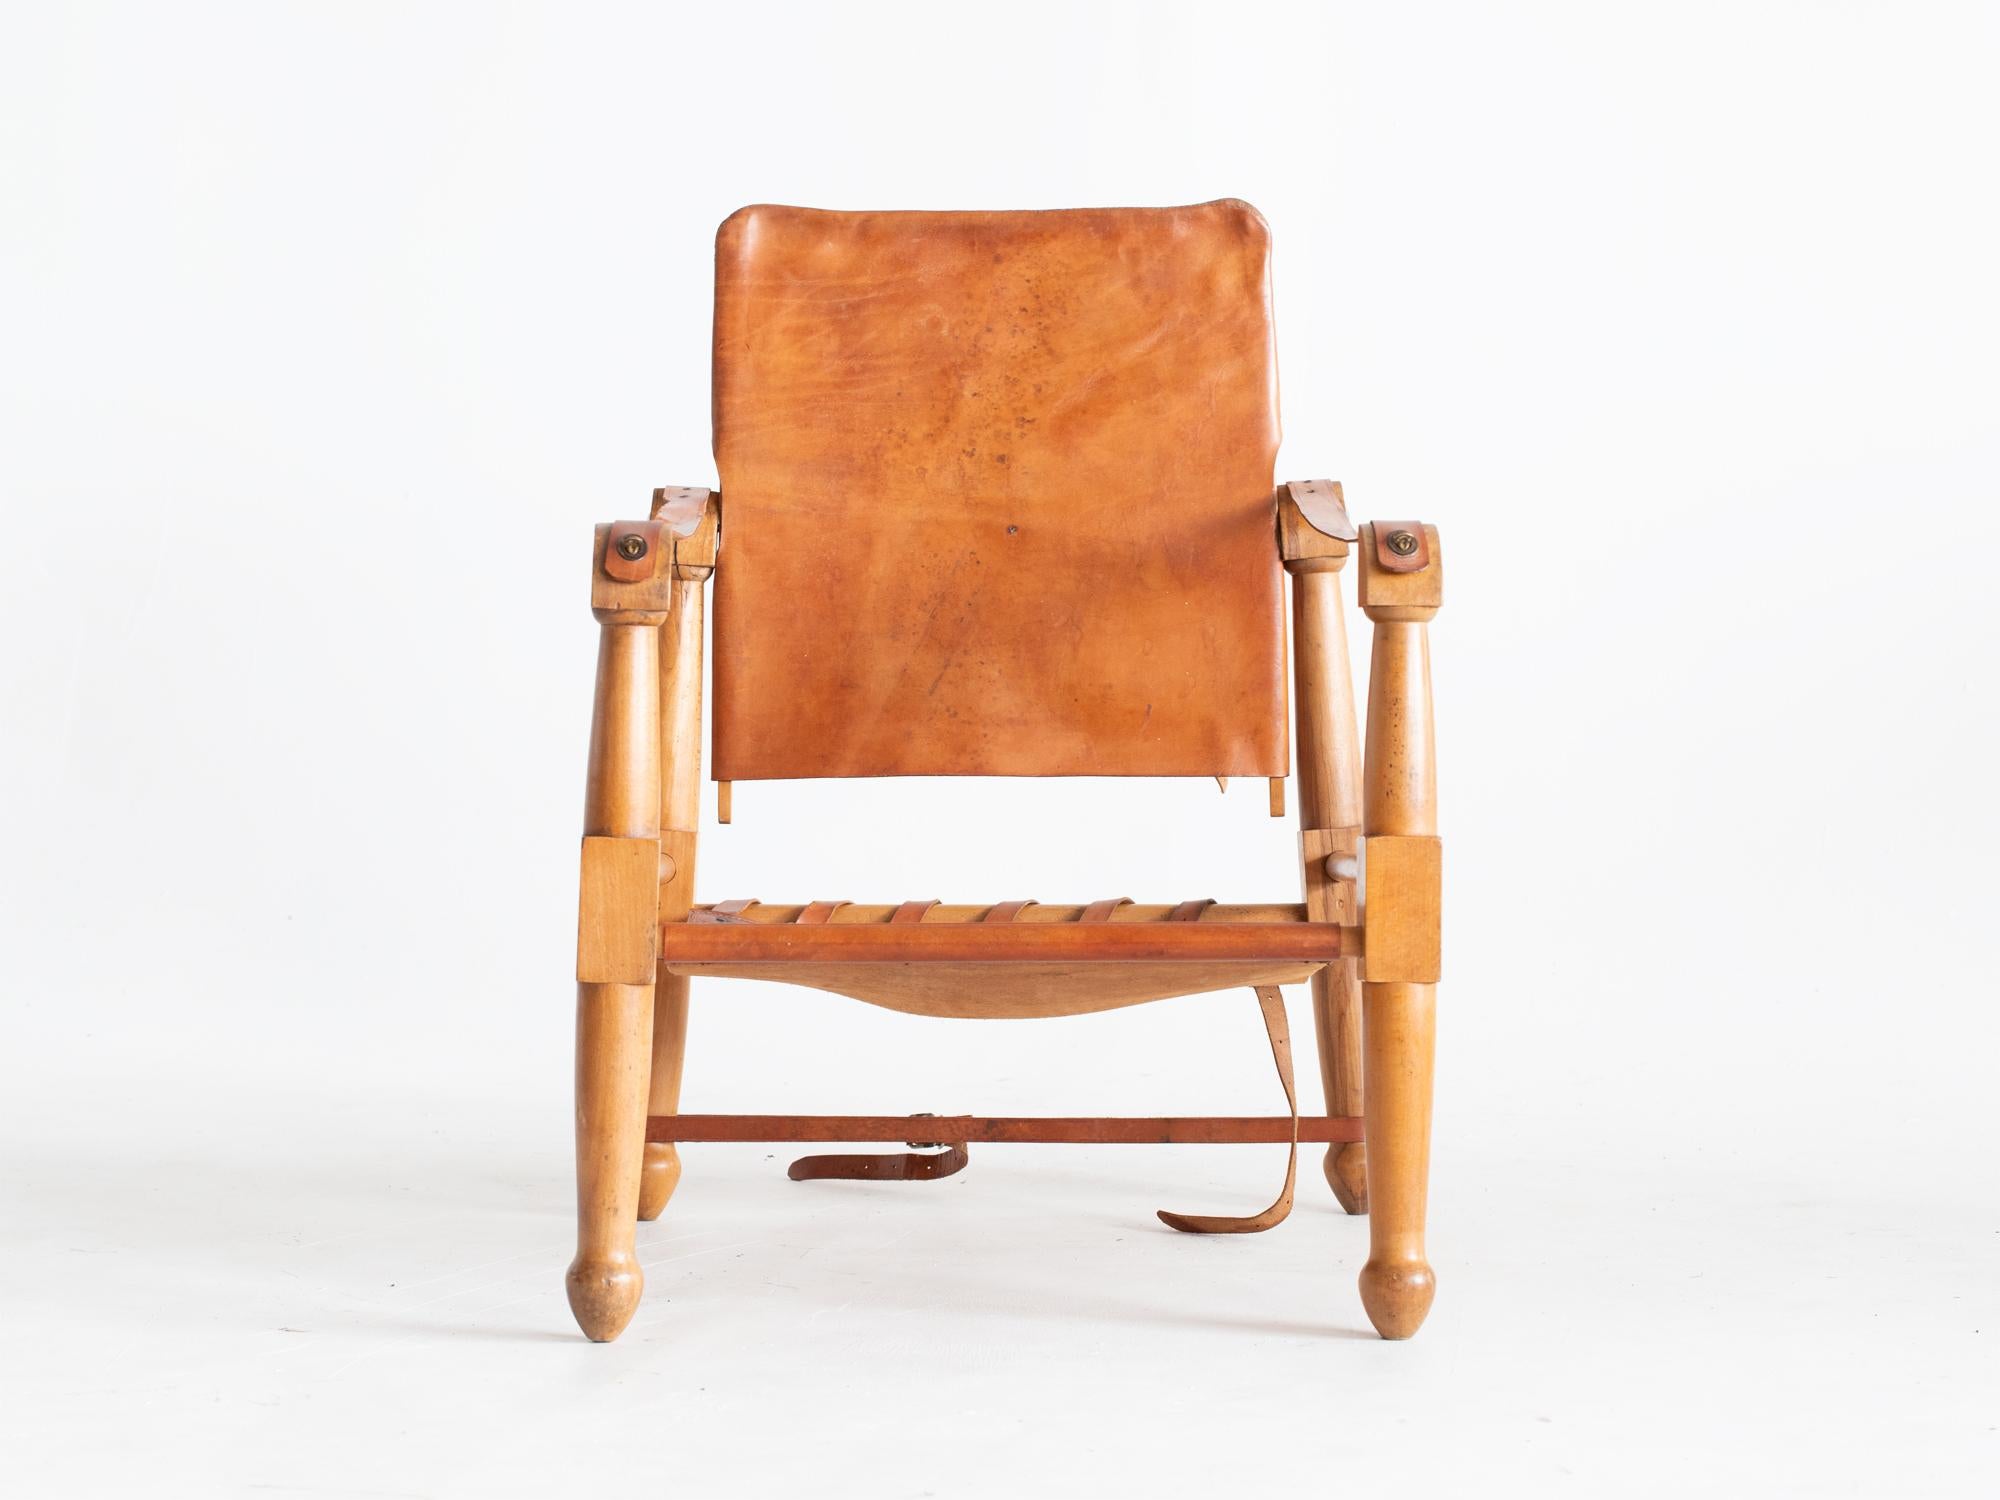 Une chaise de safari en cuir et hêtre à la manière de Kaare Klint, vers les années 1940.

Stock ref. #2244

En bon état de marche, avec des traces d'usure dues à l'âge.

78 x 59 x 63 cm (30.7 x 23.2 x 24.8 